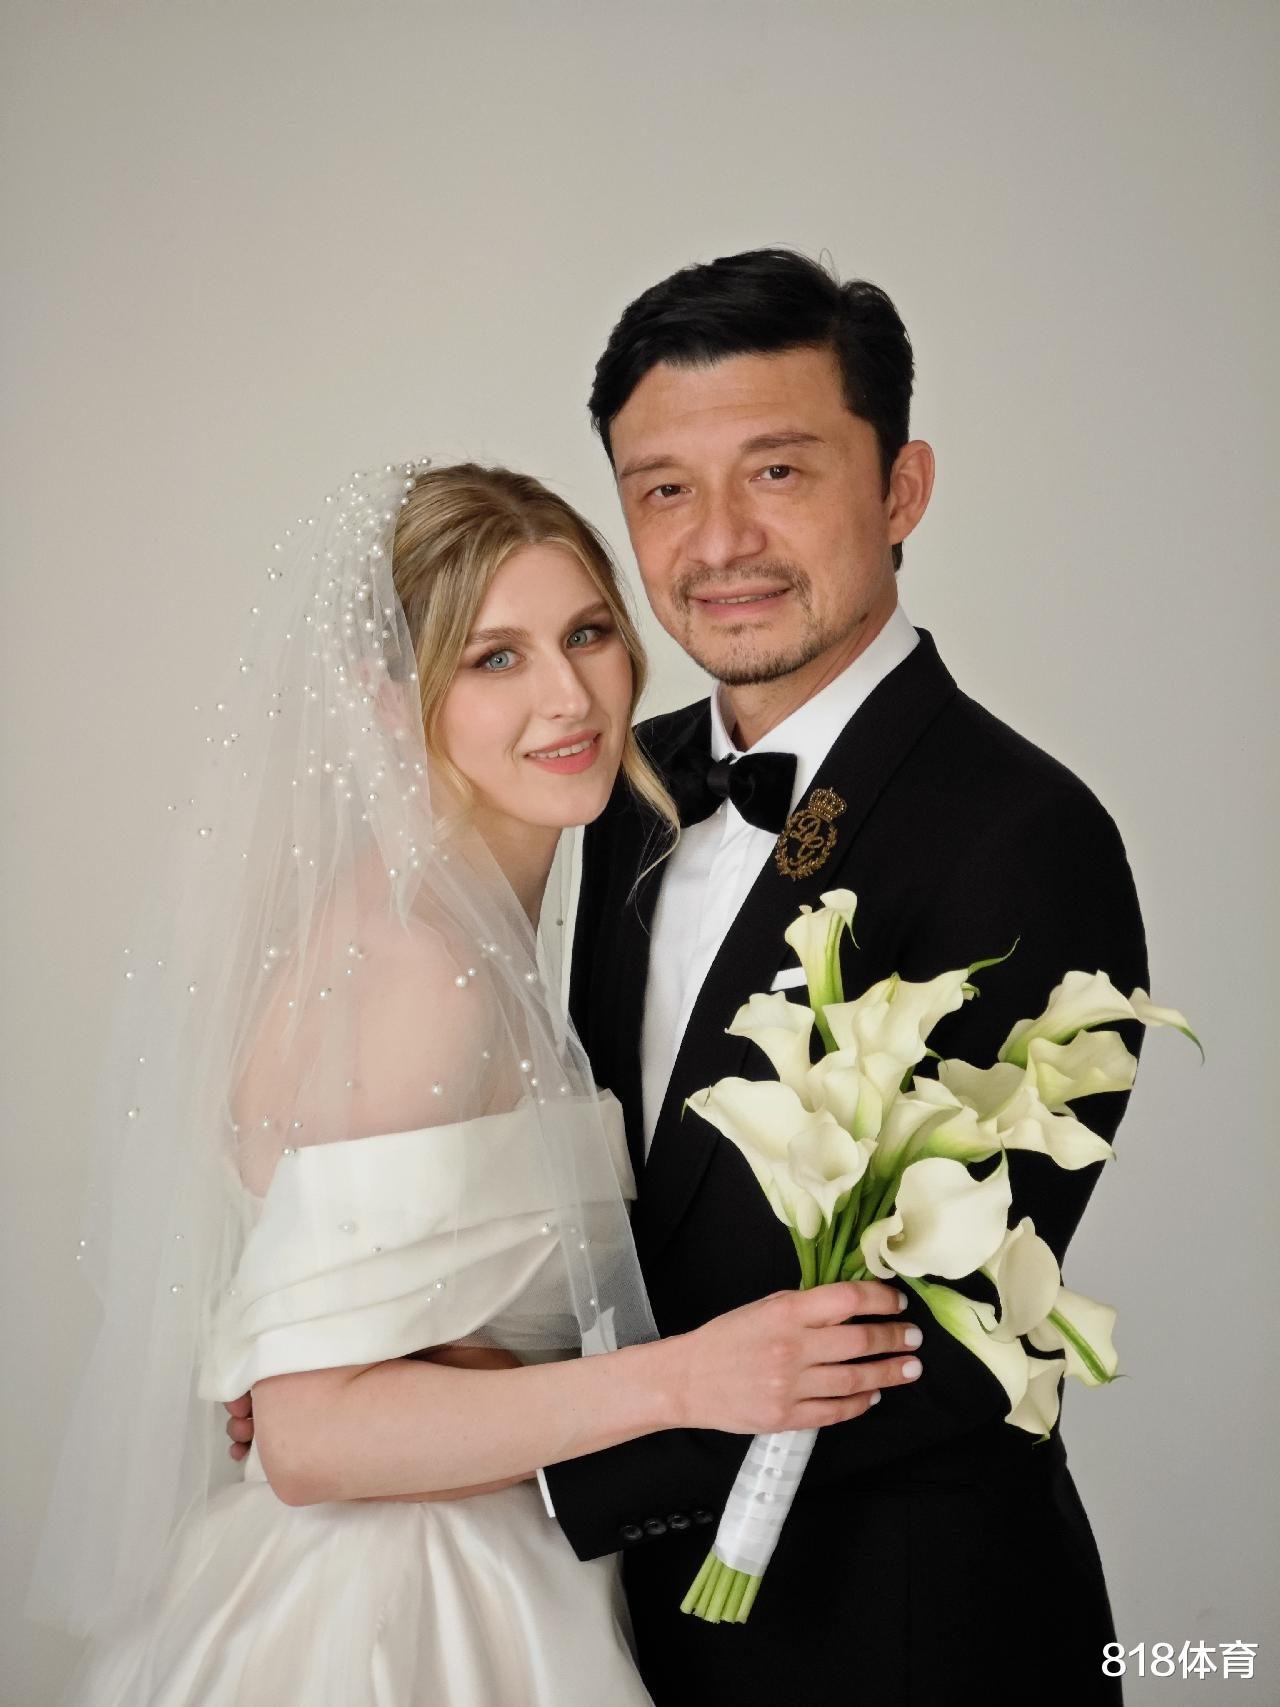 人生赢家！50岁谢晖二婚迎娶34岁俄罗斯超模，育有1子1女生活甜蜜